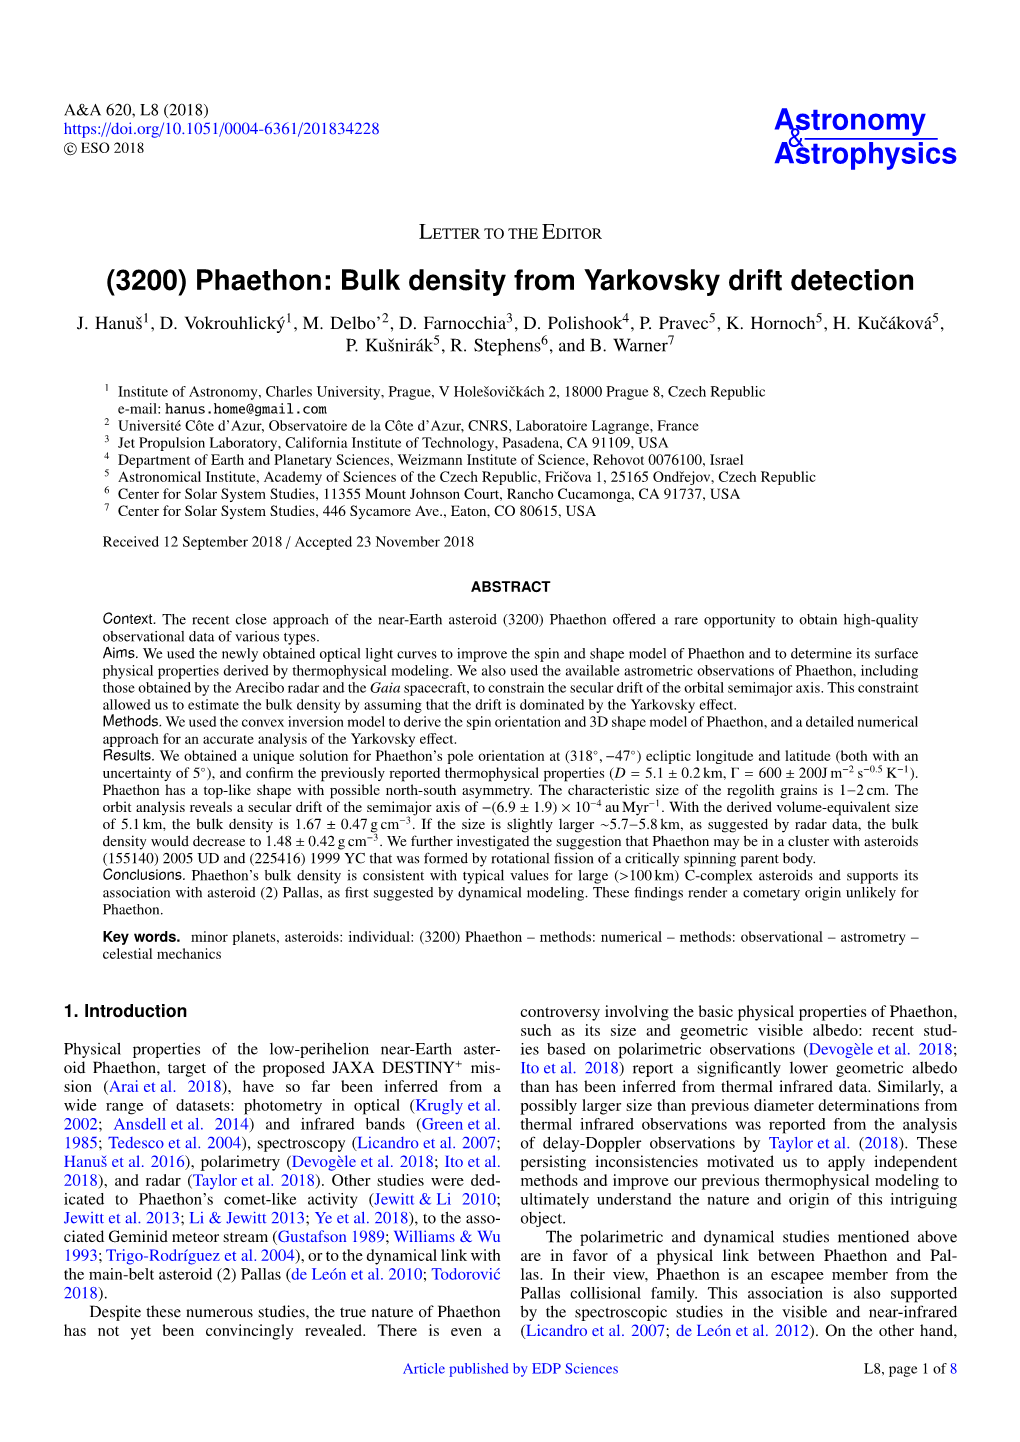 (3200) Phaethon: Bulk Density from Yarkovsky Drift Detection J